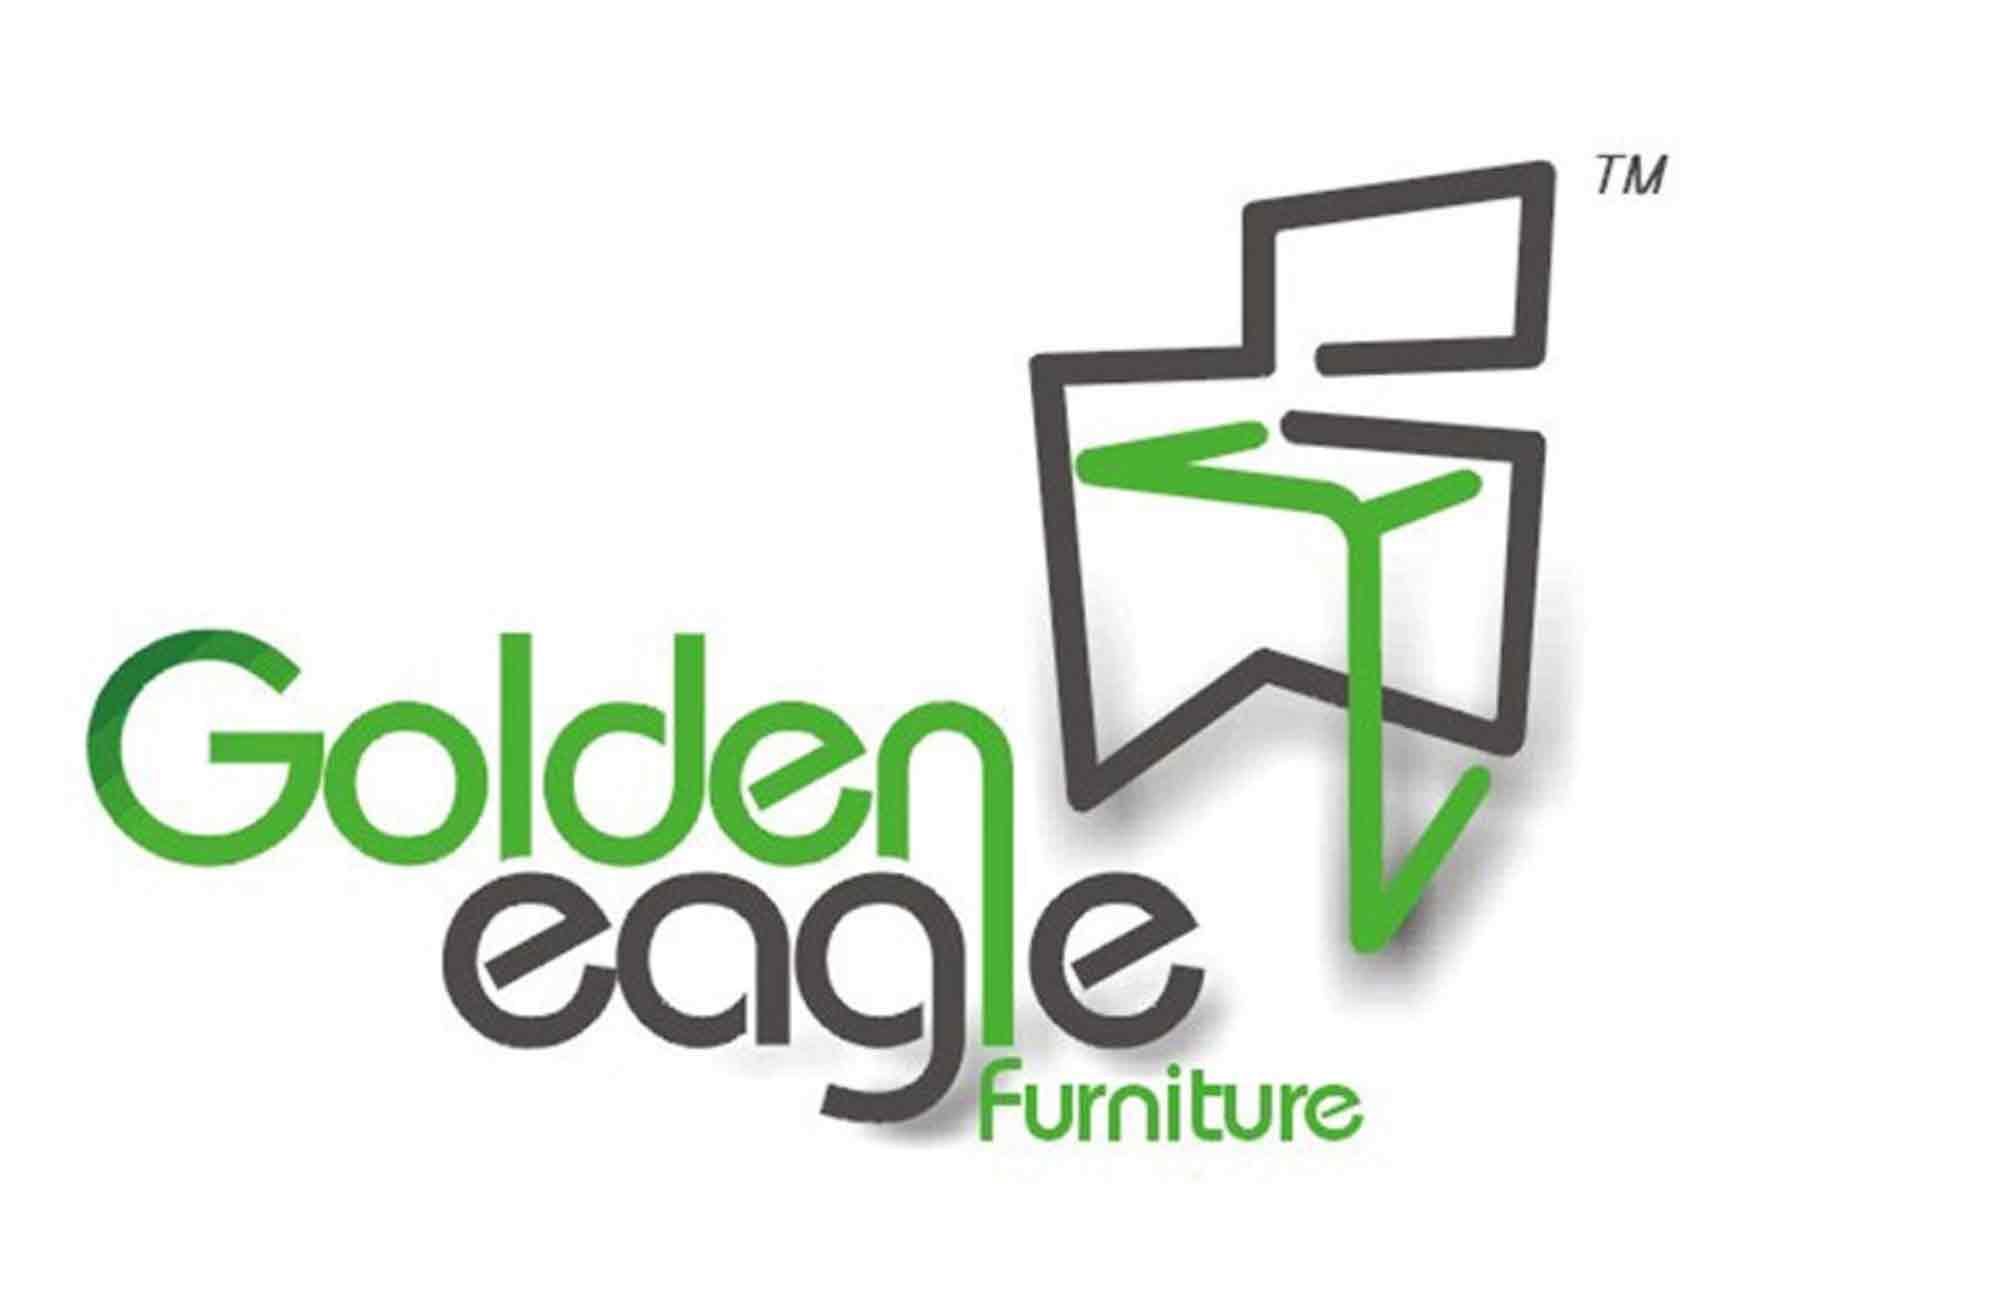 Golden Eagle Outdoor Furniture Co., LTD.